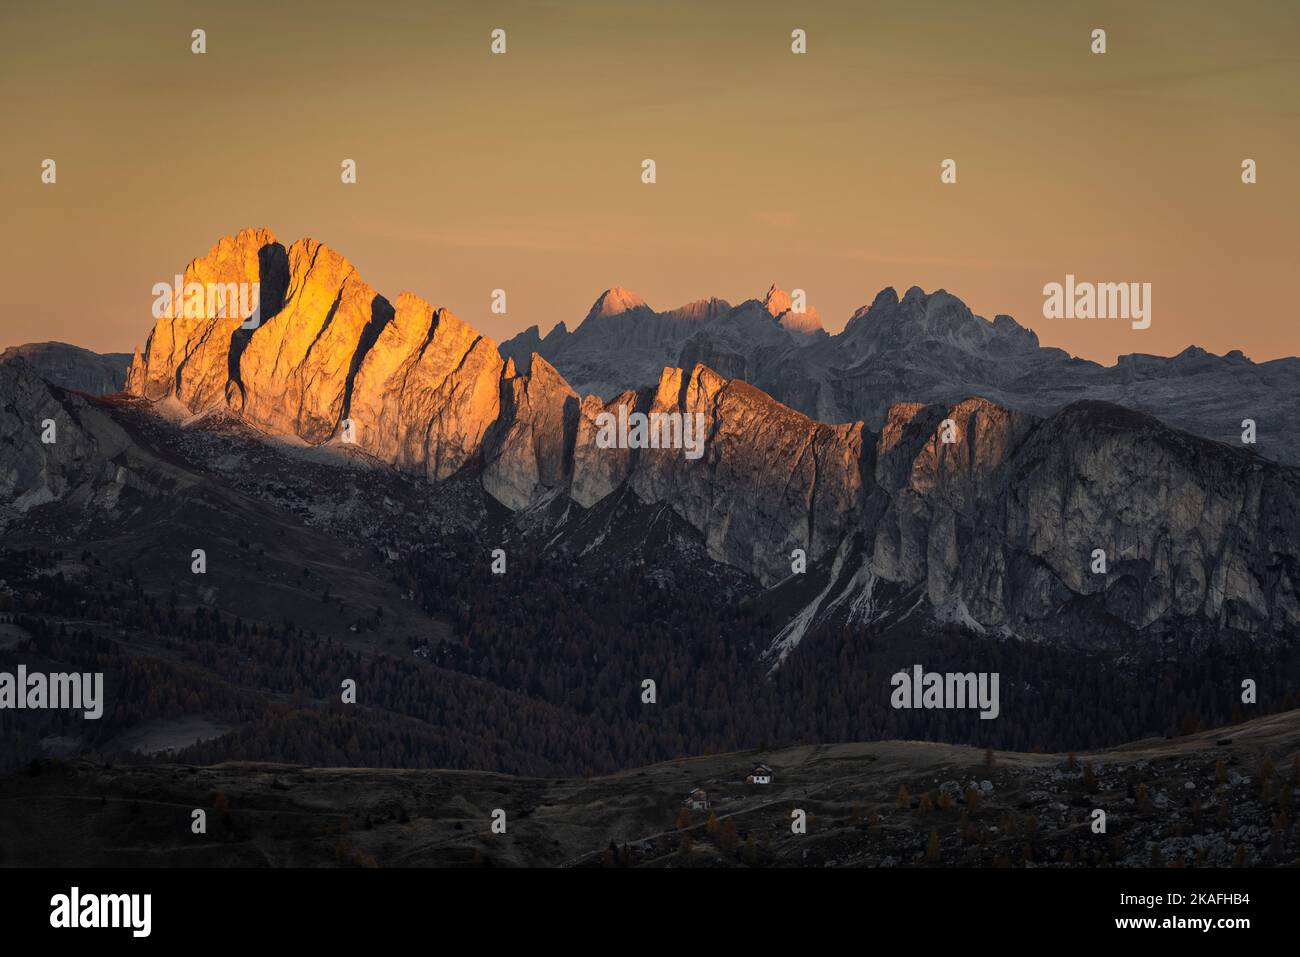 Le scogliere del Monte Settsass e Puez-Odle nelle Dolomiti brillano dorate nella prima luce del sole dopo l'alba in autunno, Italia Foto Stock